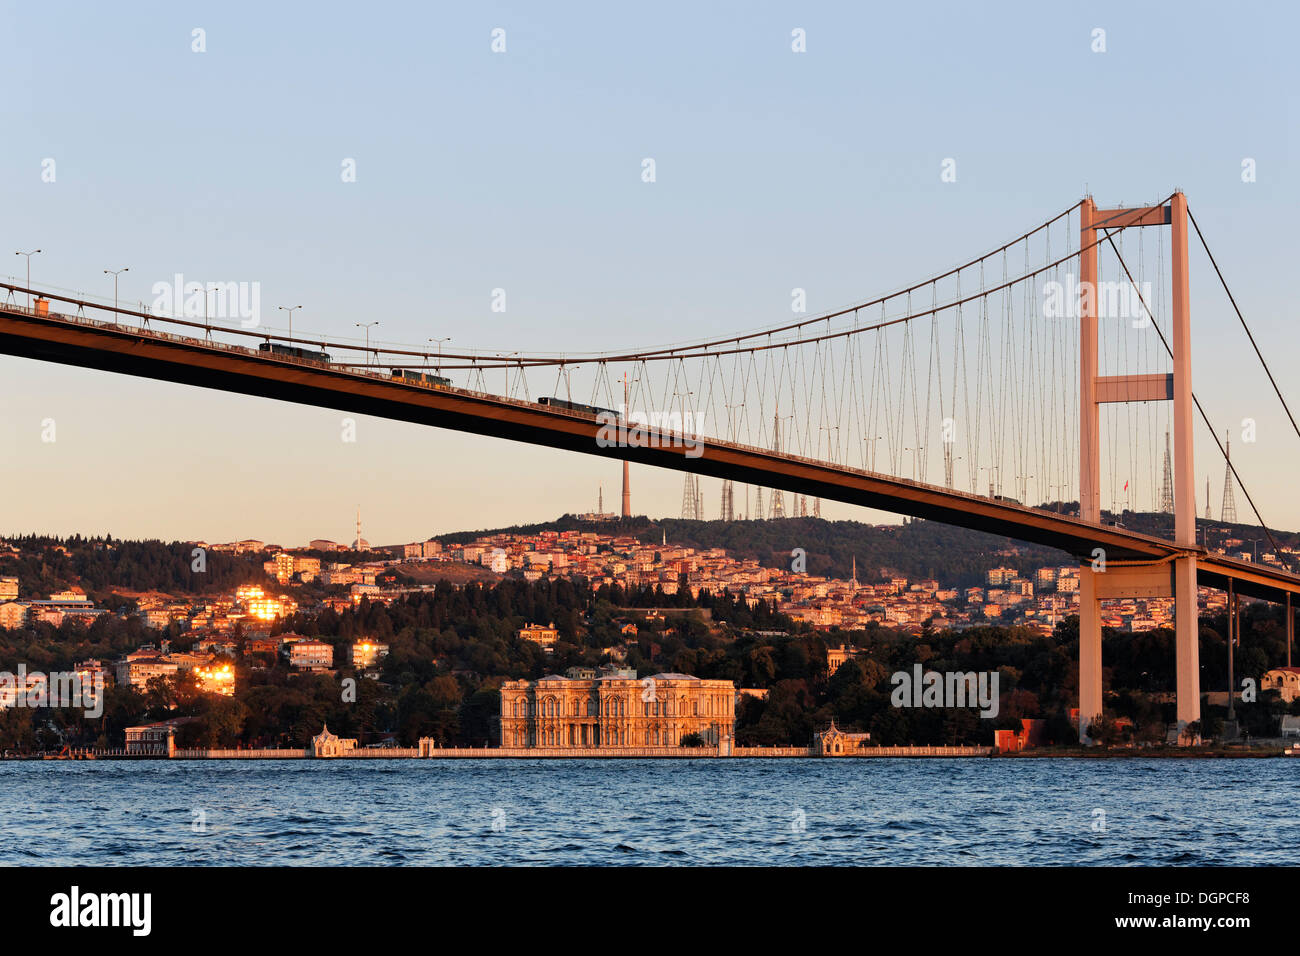 Pont du Bosphore avec le Palais Beylerbeyi, Beylerbeyi Sarayi, sur la rive asiatique, Istanbul, Turquie, Europe, Asie Banque D'Images